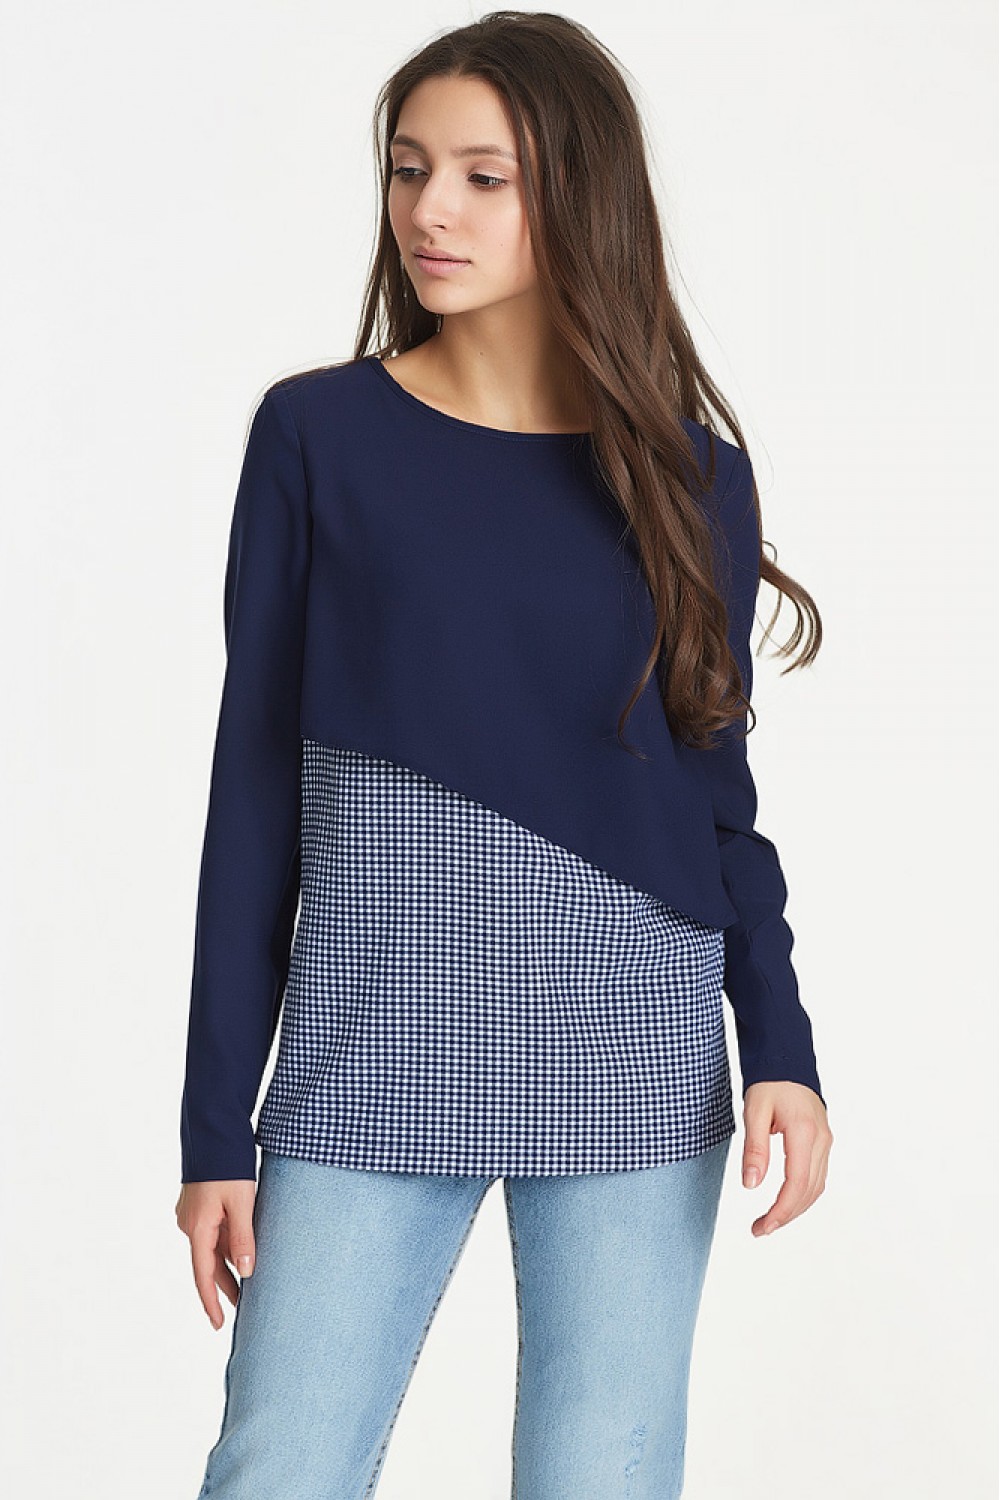 Шифоновая двухцветная блузка с длинными рукавами Lilou blue купить винтернет-магазине Divaroom